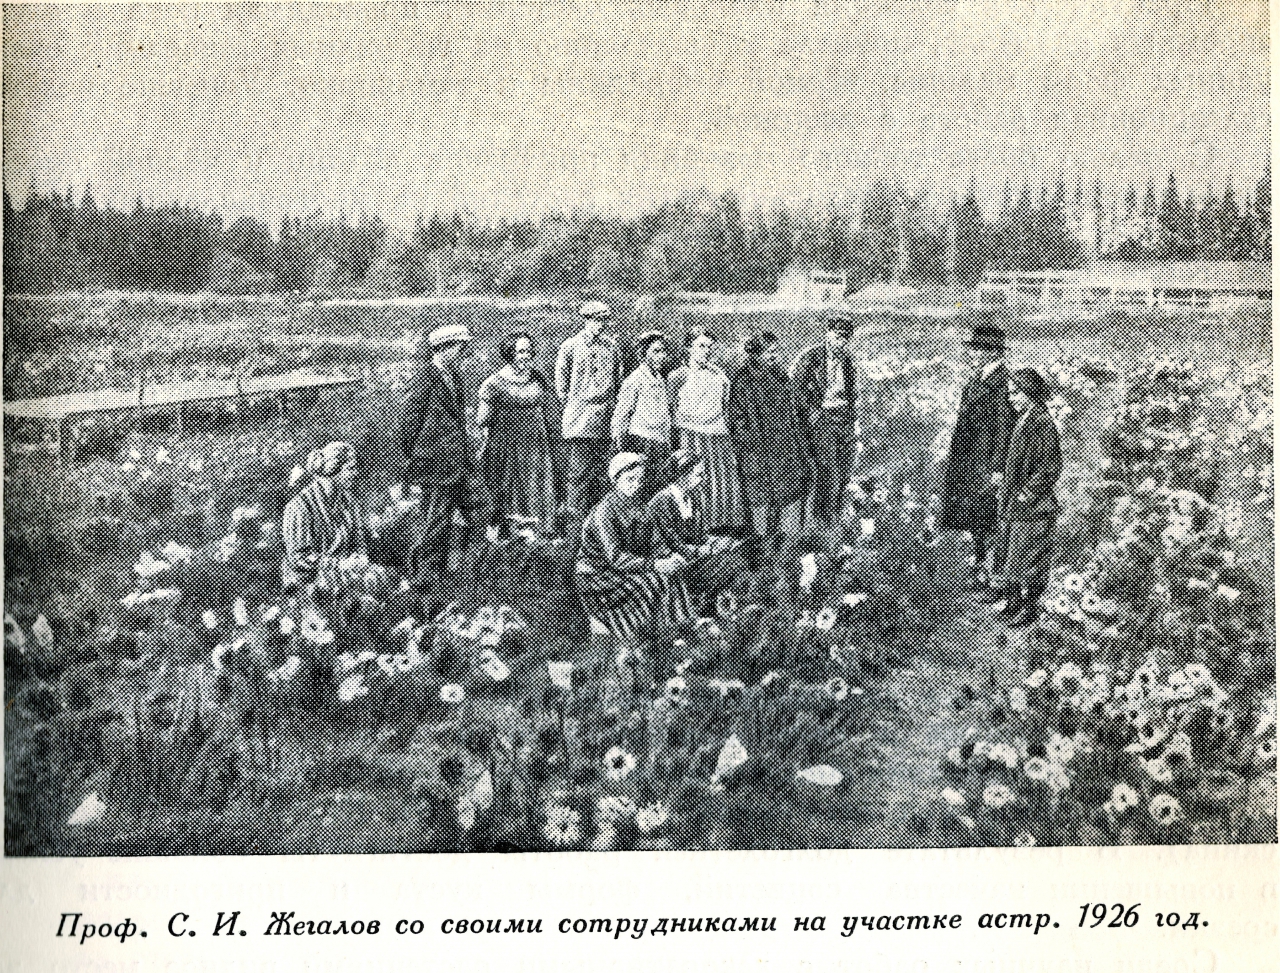 1730948 Опыты с астрами лаборатории садоводства и огородничества профессора Сергея Жегалова.jpg